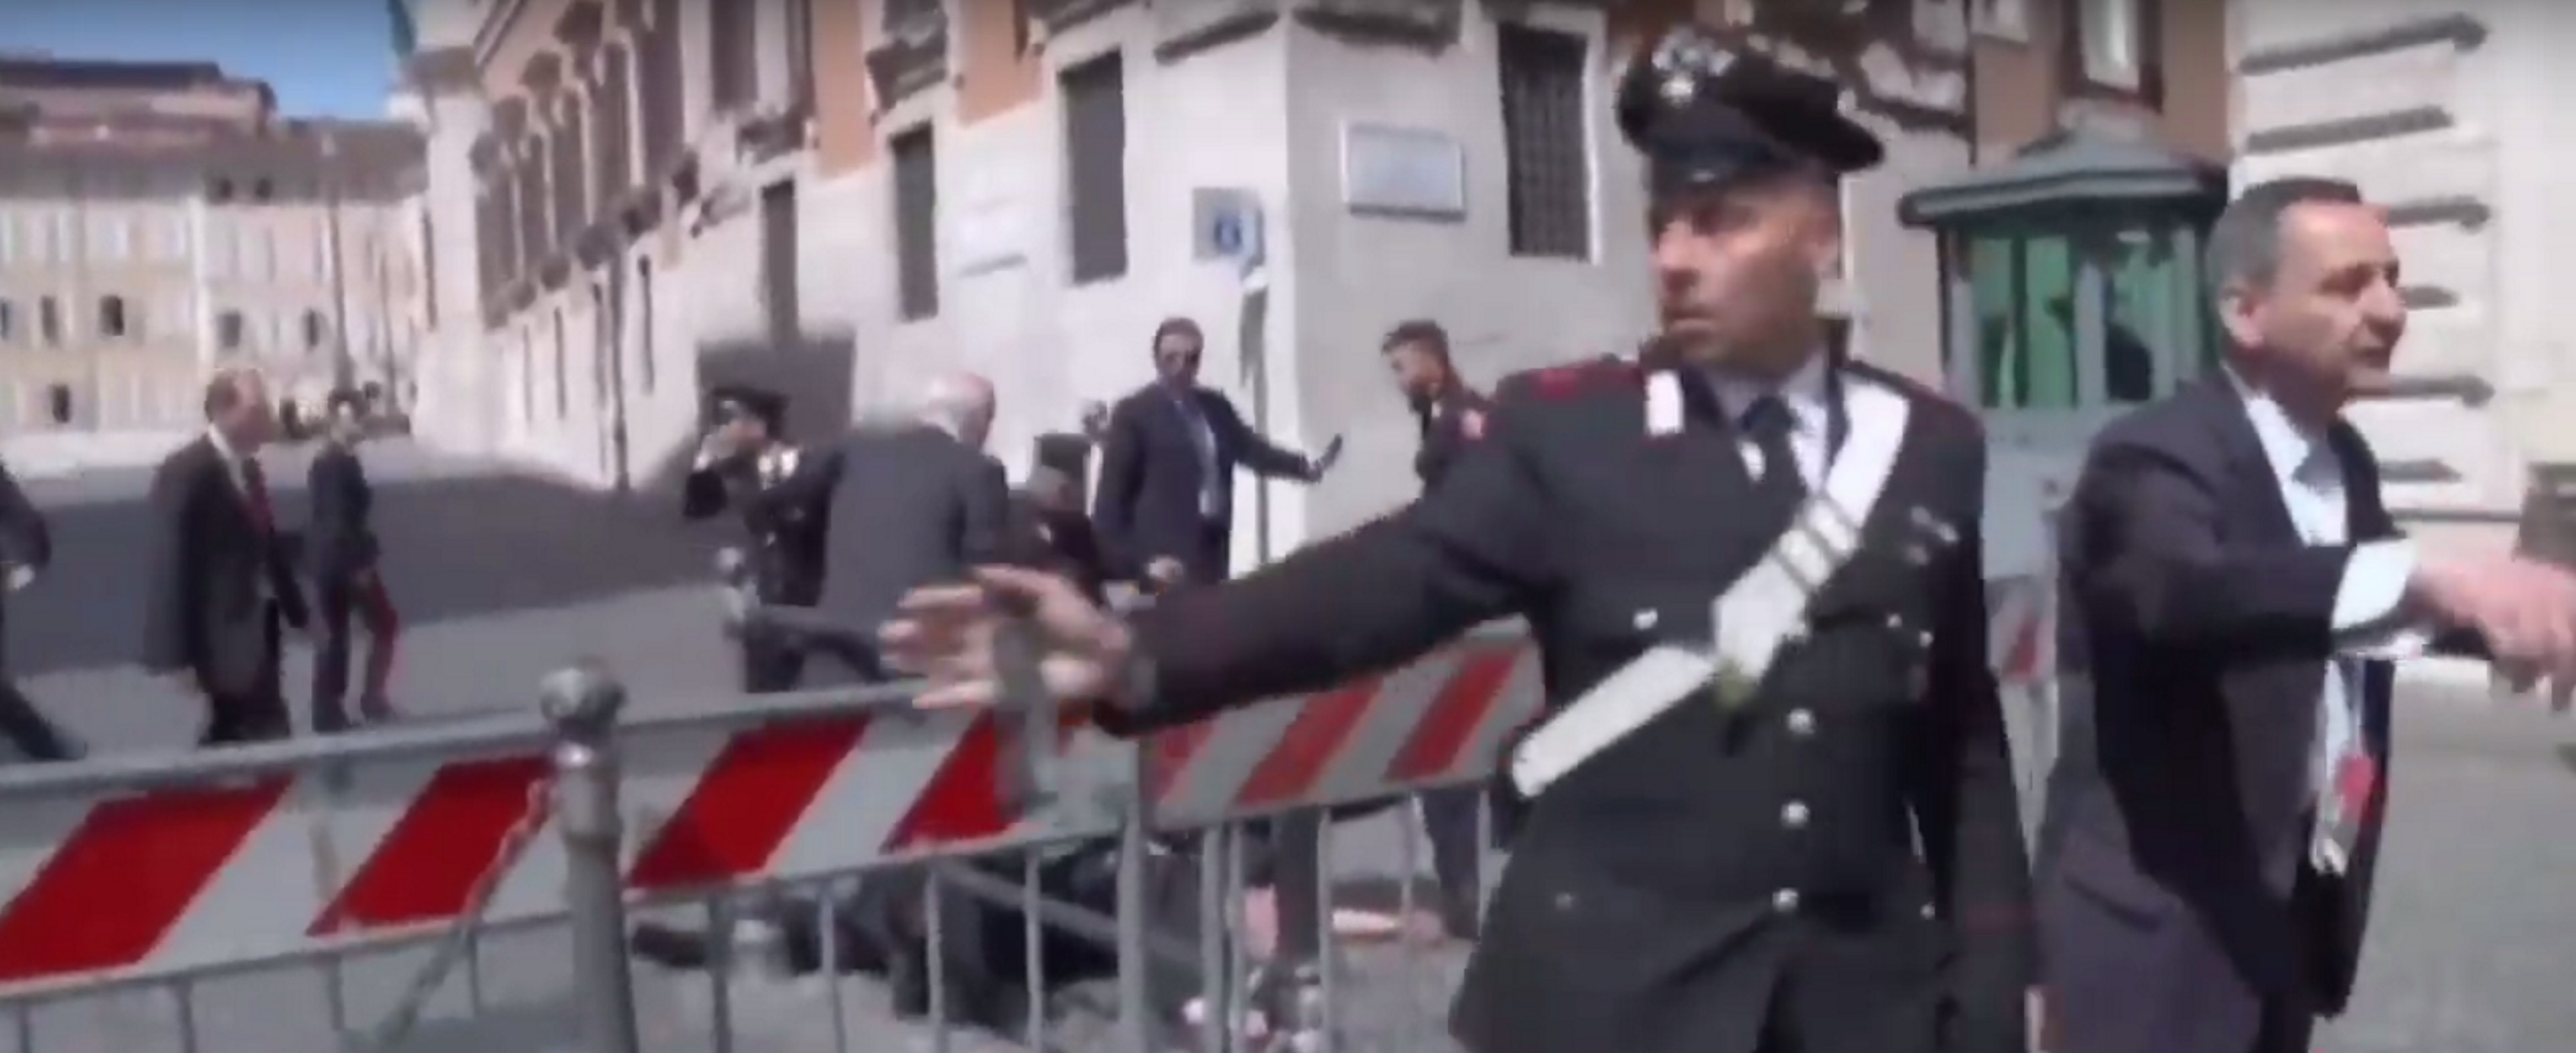 Ιταλία: Δύο νεκροί αστυνομικοί από πυροβολισμούς κοντά σε τμήμα στην Τεργέστη!